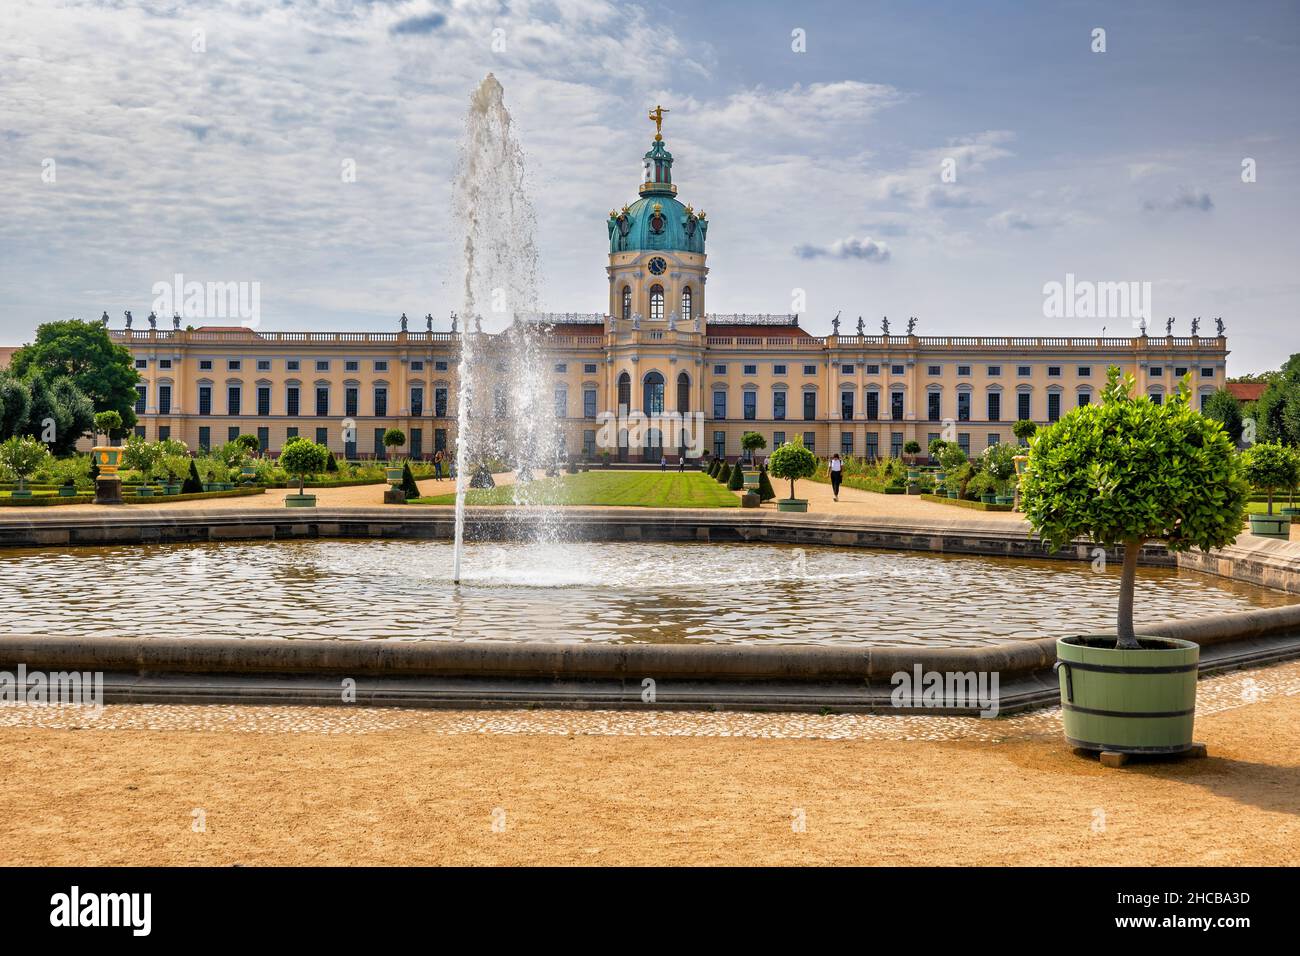 Schloss Charlottenburg in Berlin, Deutschland, Blick vom Schlosspark mit Brunnen, barockes Wahrzeichen der Stadt aus dem 17th. Jahrhundert. Stockfoto